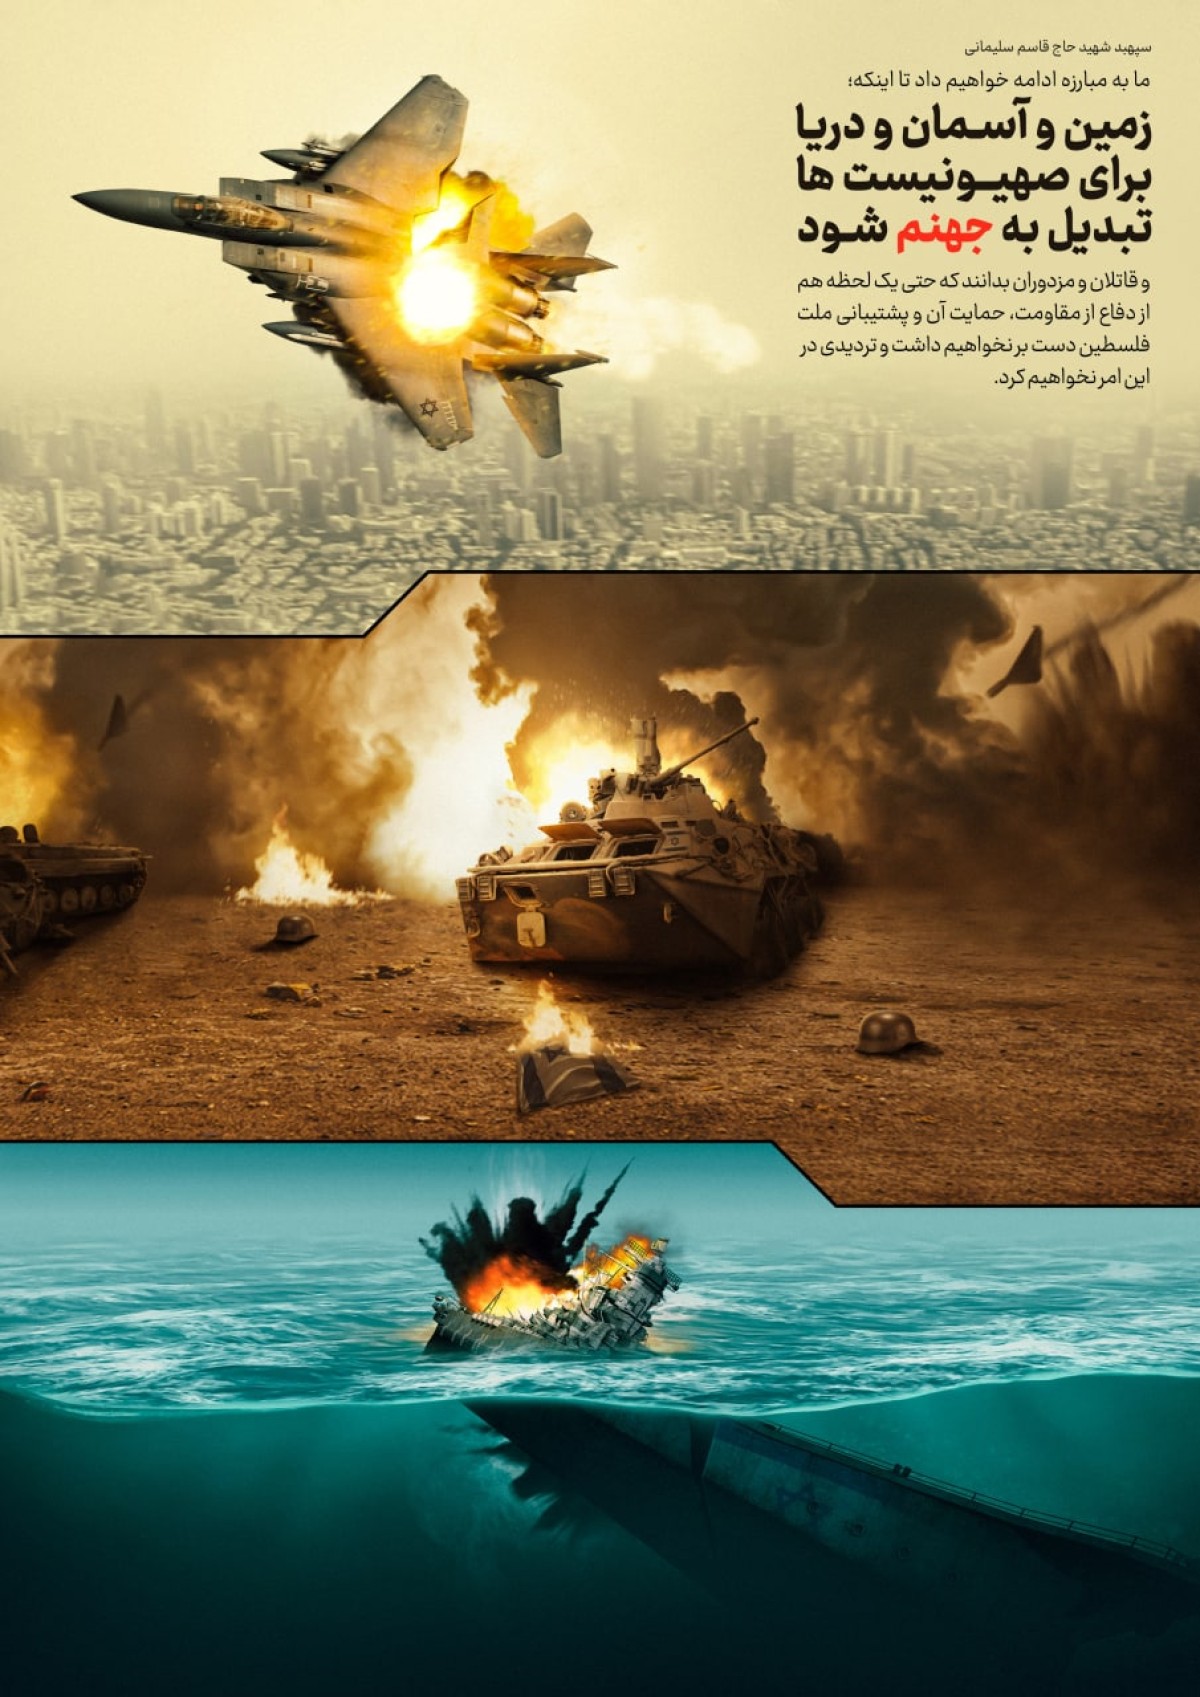 مجموعه پوستر “دیدگاه های سردار سلیمانی درباره نابودی رژیم صهیونیستی اسرائیل”